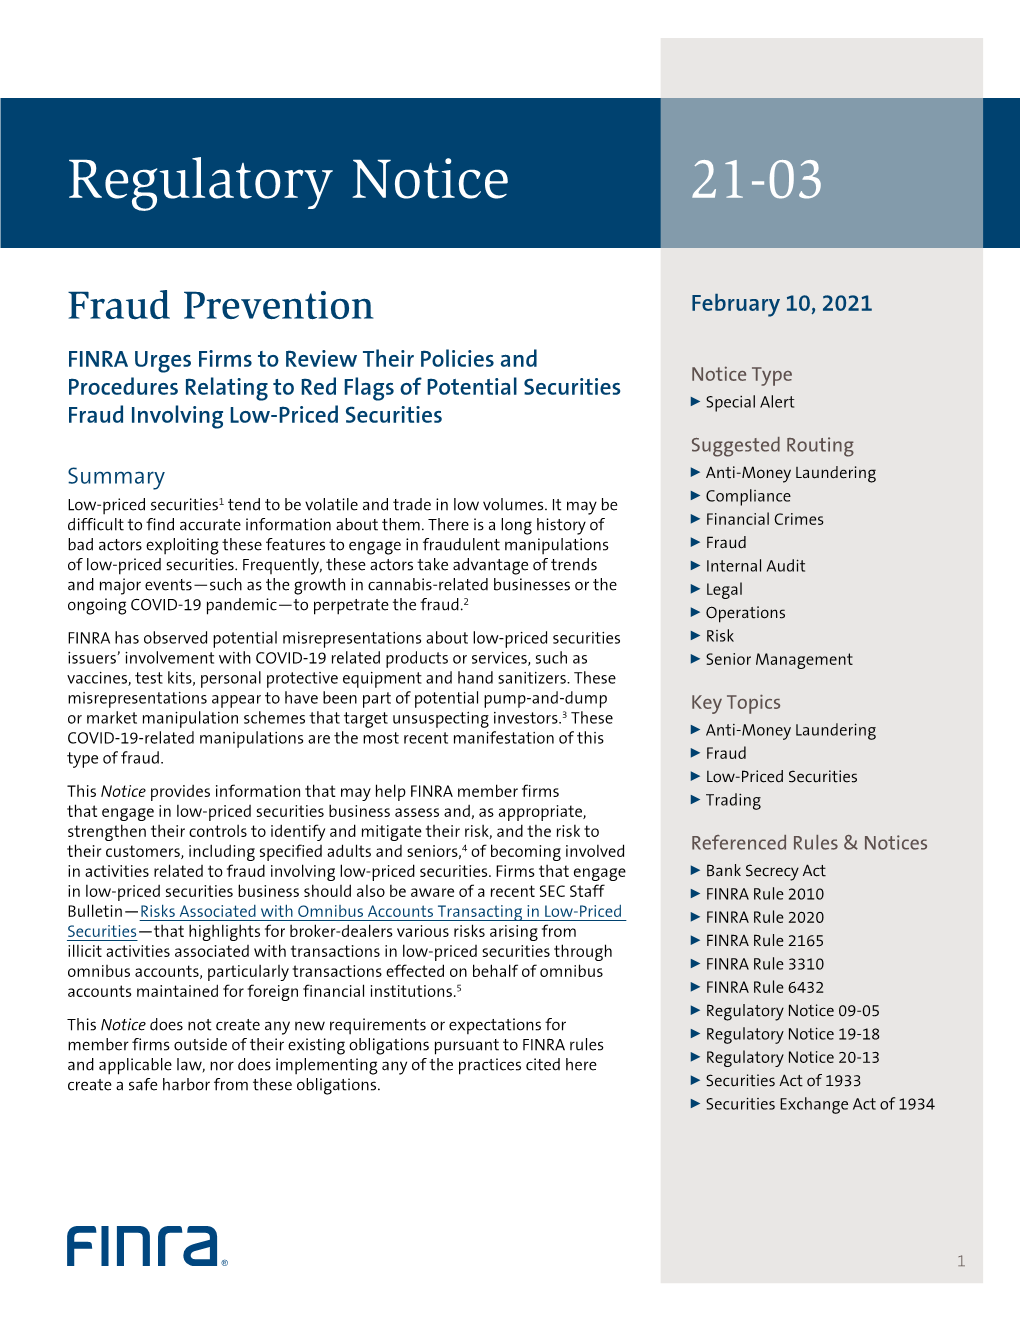 Regulatory Notice 21-03